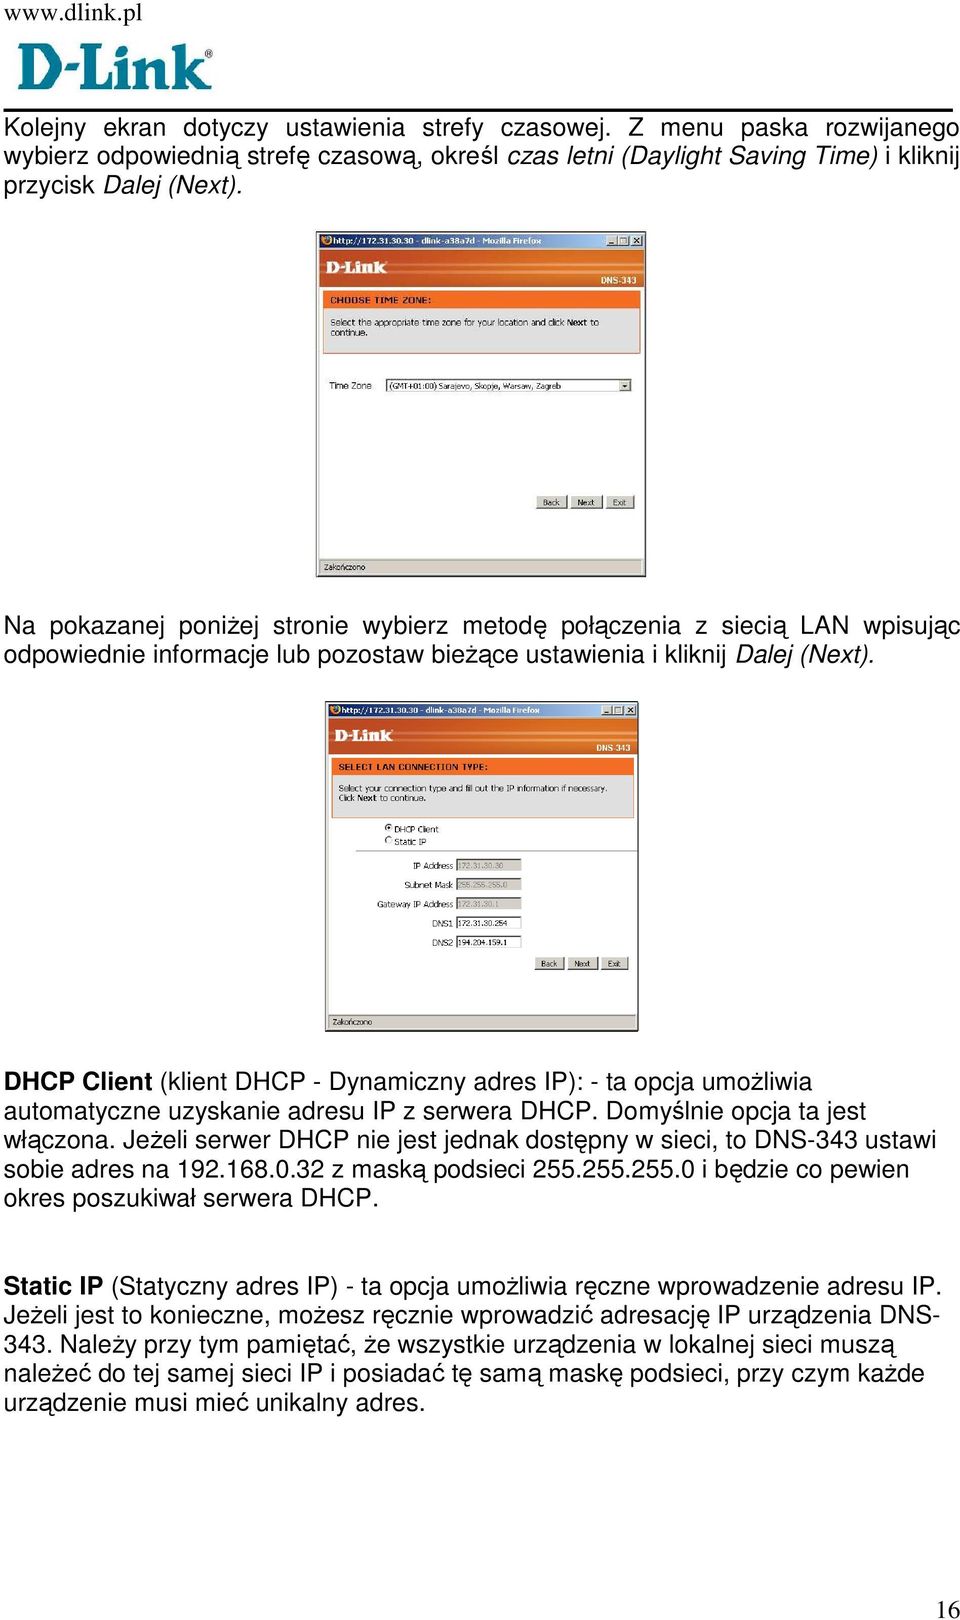 DHCP Client (klient DHCP - Dynamiczny adres IP): - ta opcja umoŝliwia automatyczne uzyskanie adresu IP z serwera DHCP. Domyślnie opcja ta jest włączona.